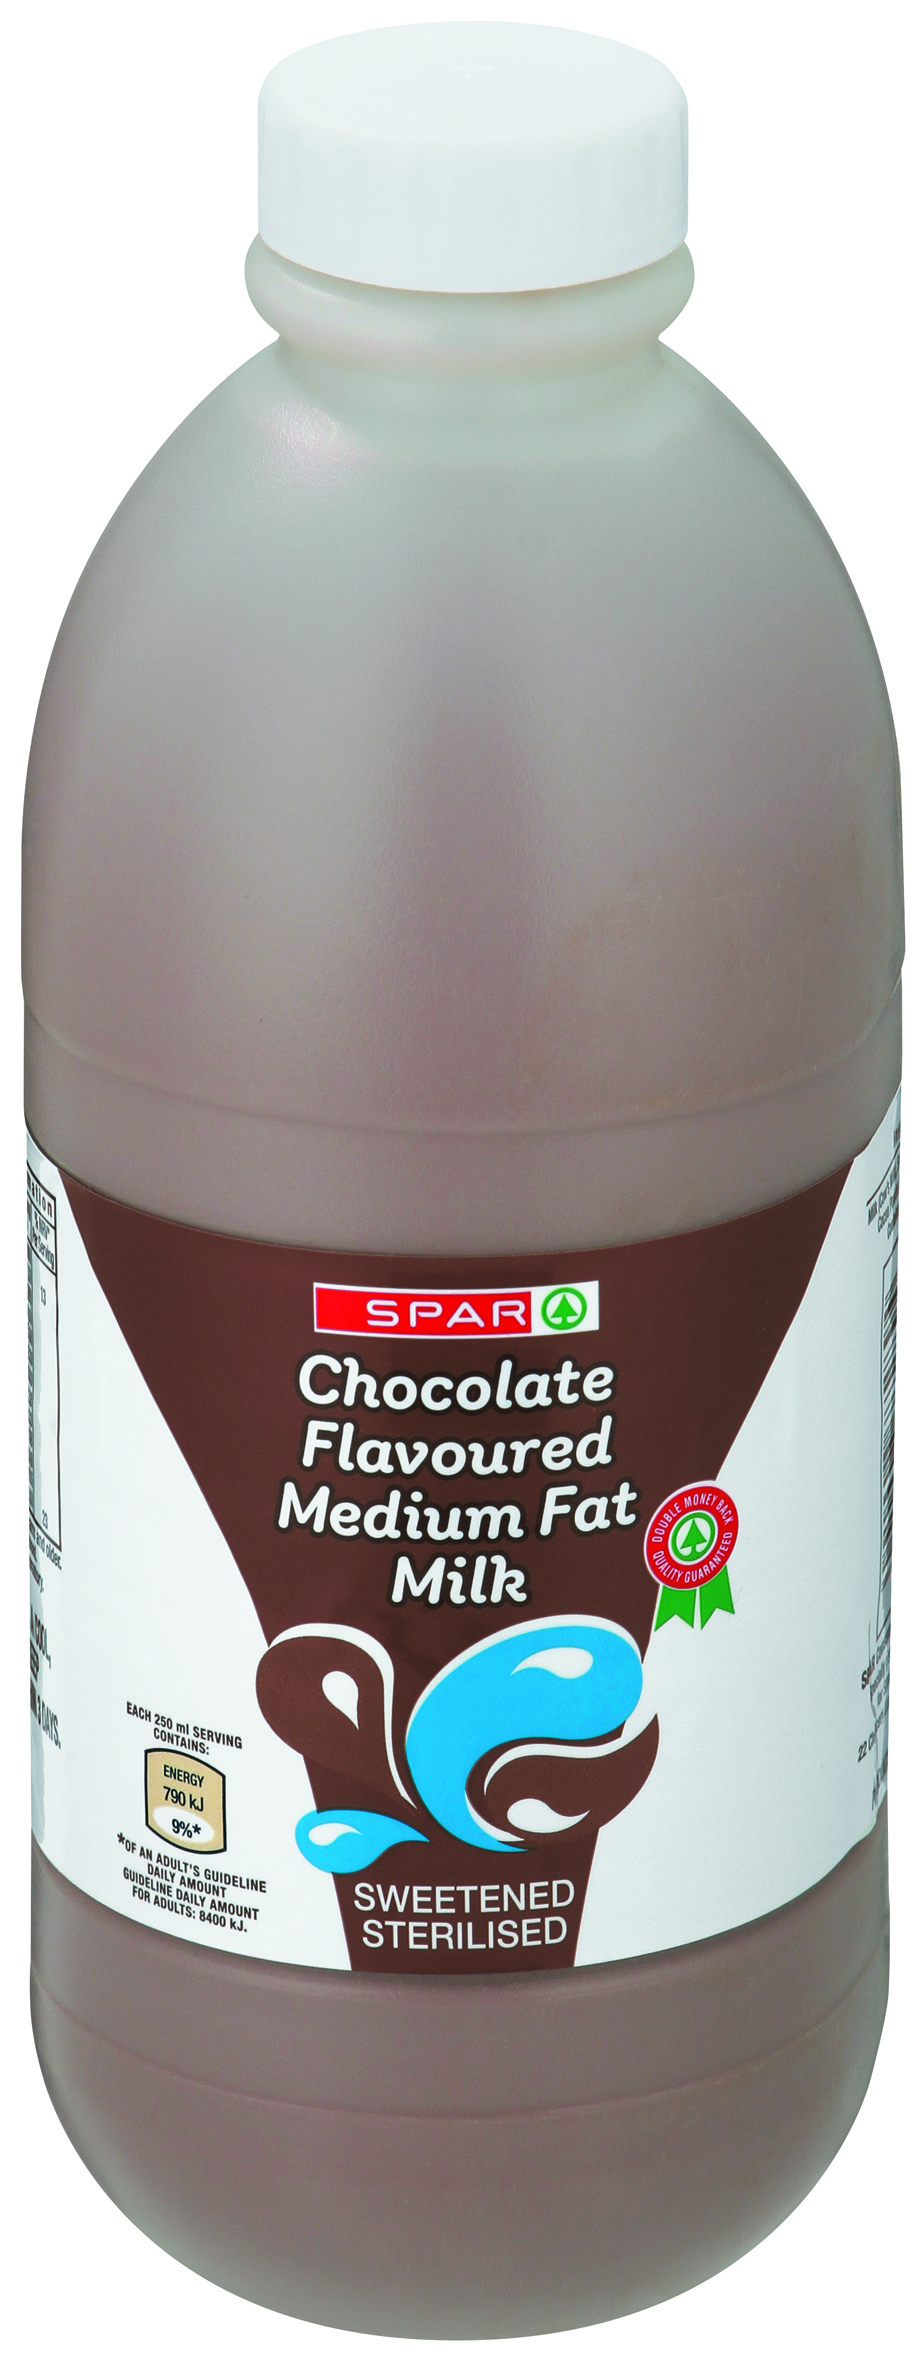 flavoured medium fat milk chocolate